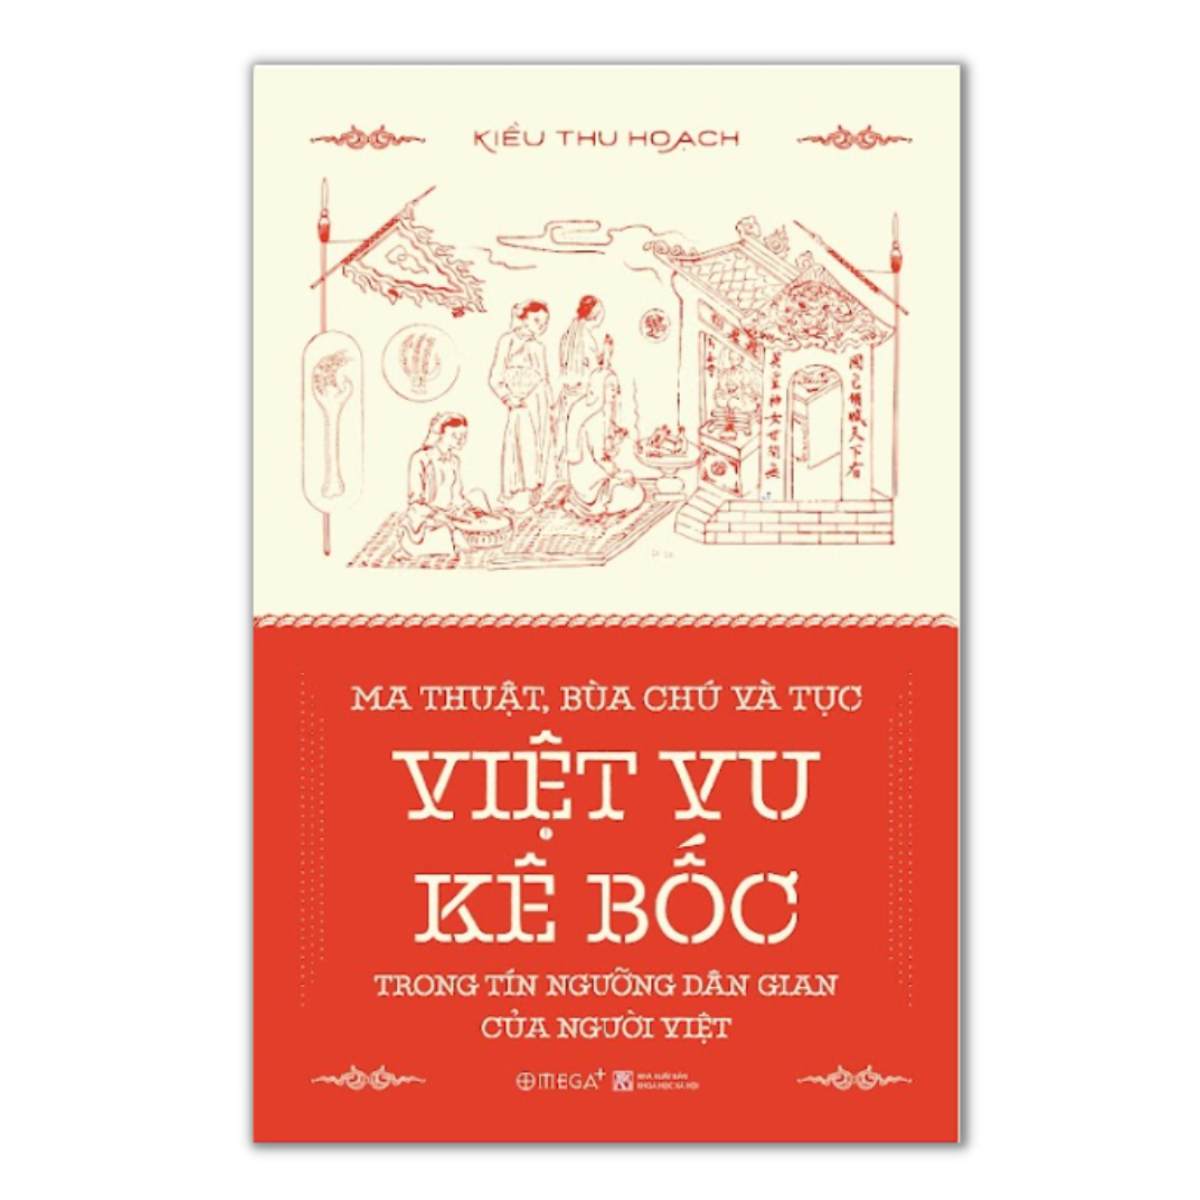 Ma Thuật, Bùa Chú và Tục Việt Vu Kê Bốc Trong Tín Ngướng Dân Gian Của Người Việt  - Bản Quyền